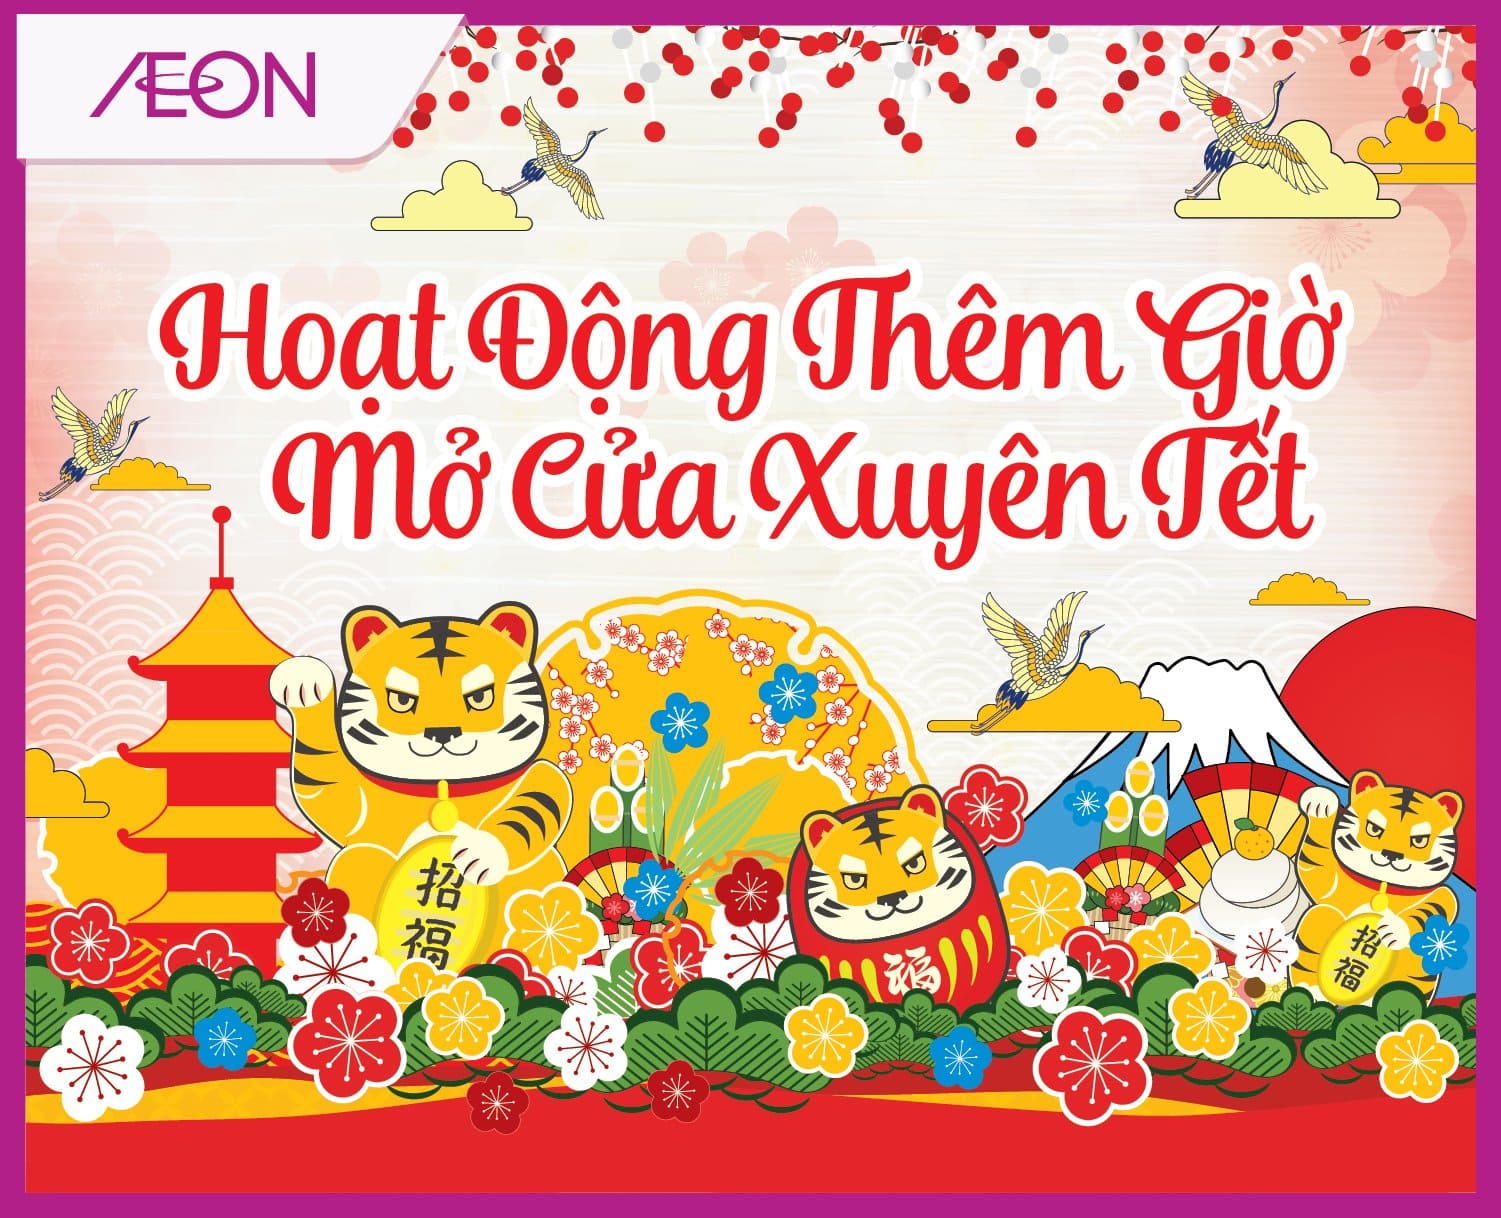 Aeon Việt Nam năm nay ra mắt chuỗi cửa hàng mới mang phong cách Nhật Bản, đẳng cấp quốc tế. Hãy cùng đến Aeon để trải nghiệm mua sắm tại môi trường sạch sẽ, hiện đại và tiện nghi. Bạn sẽ được chiêm ngưỡng những sản phẩm độc quyền chỉ có tại Aeon, đảm bảo về chất lượng và giá cả hợp lý.